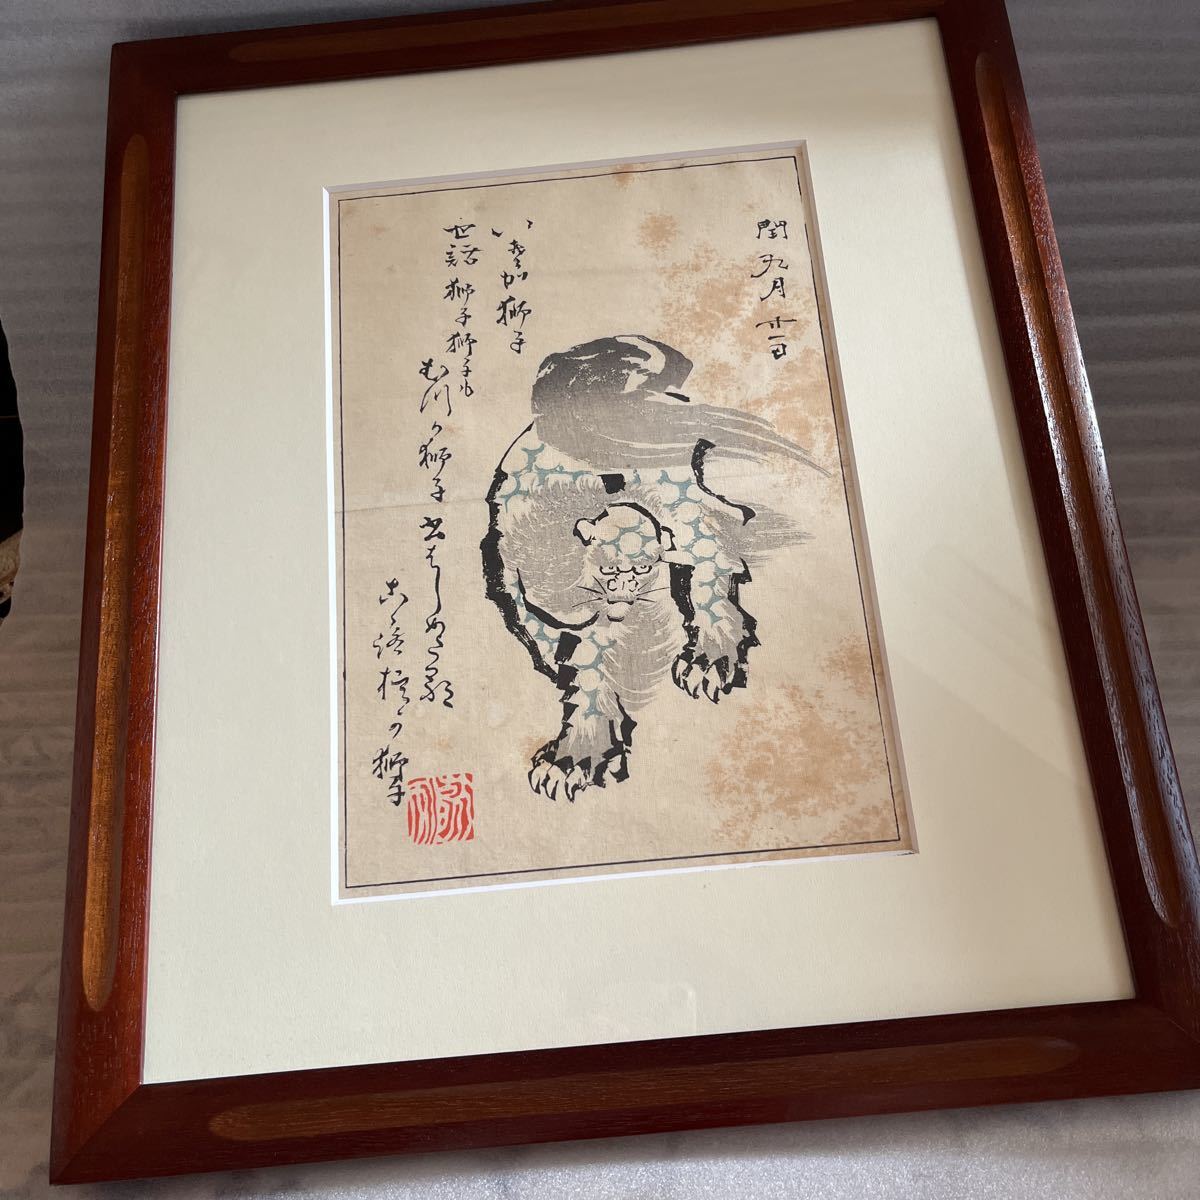 狮子画日本画老虎浮世绘老虎艺术老虎虎画日本浮世绘艺术艺术, 绘画, 浮世绘, 打印, 其他的